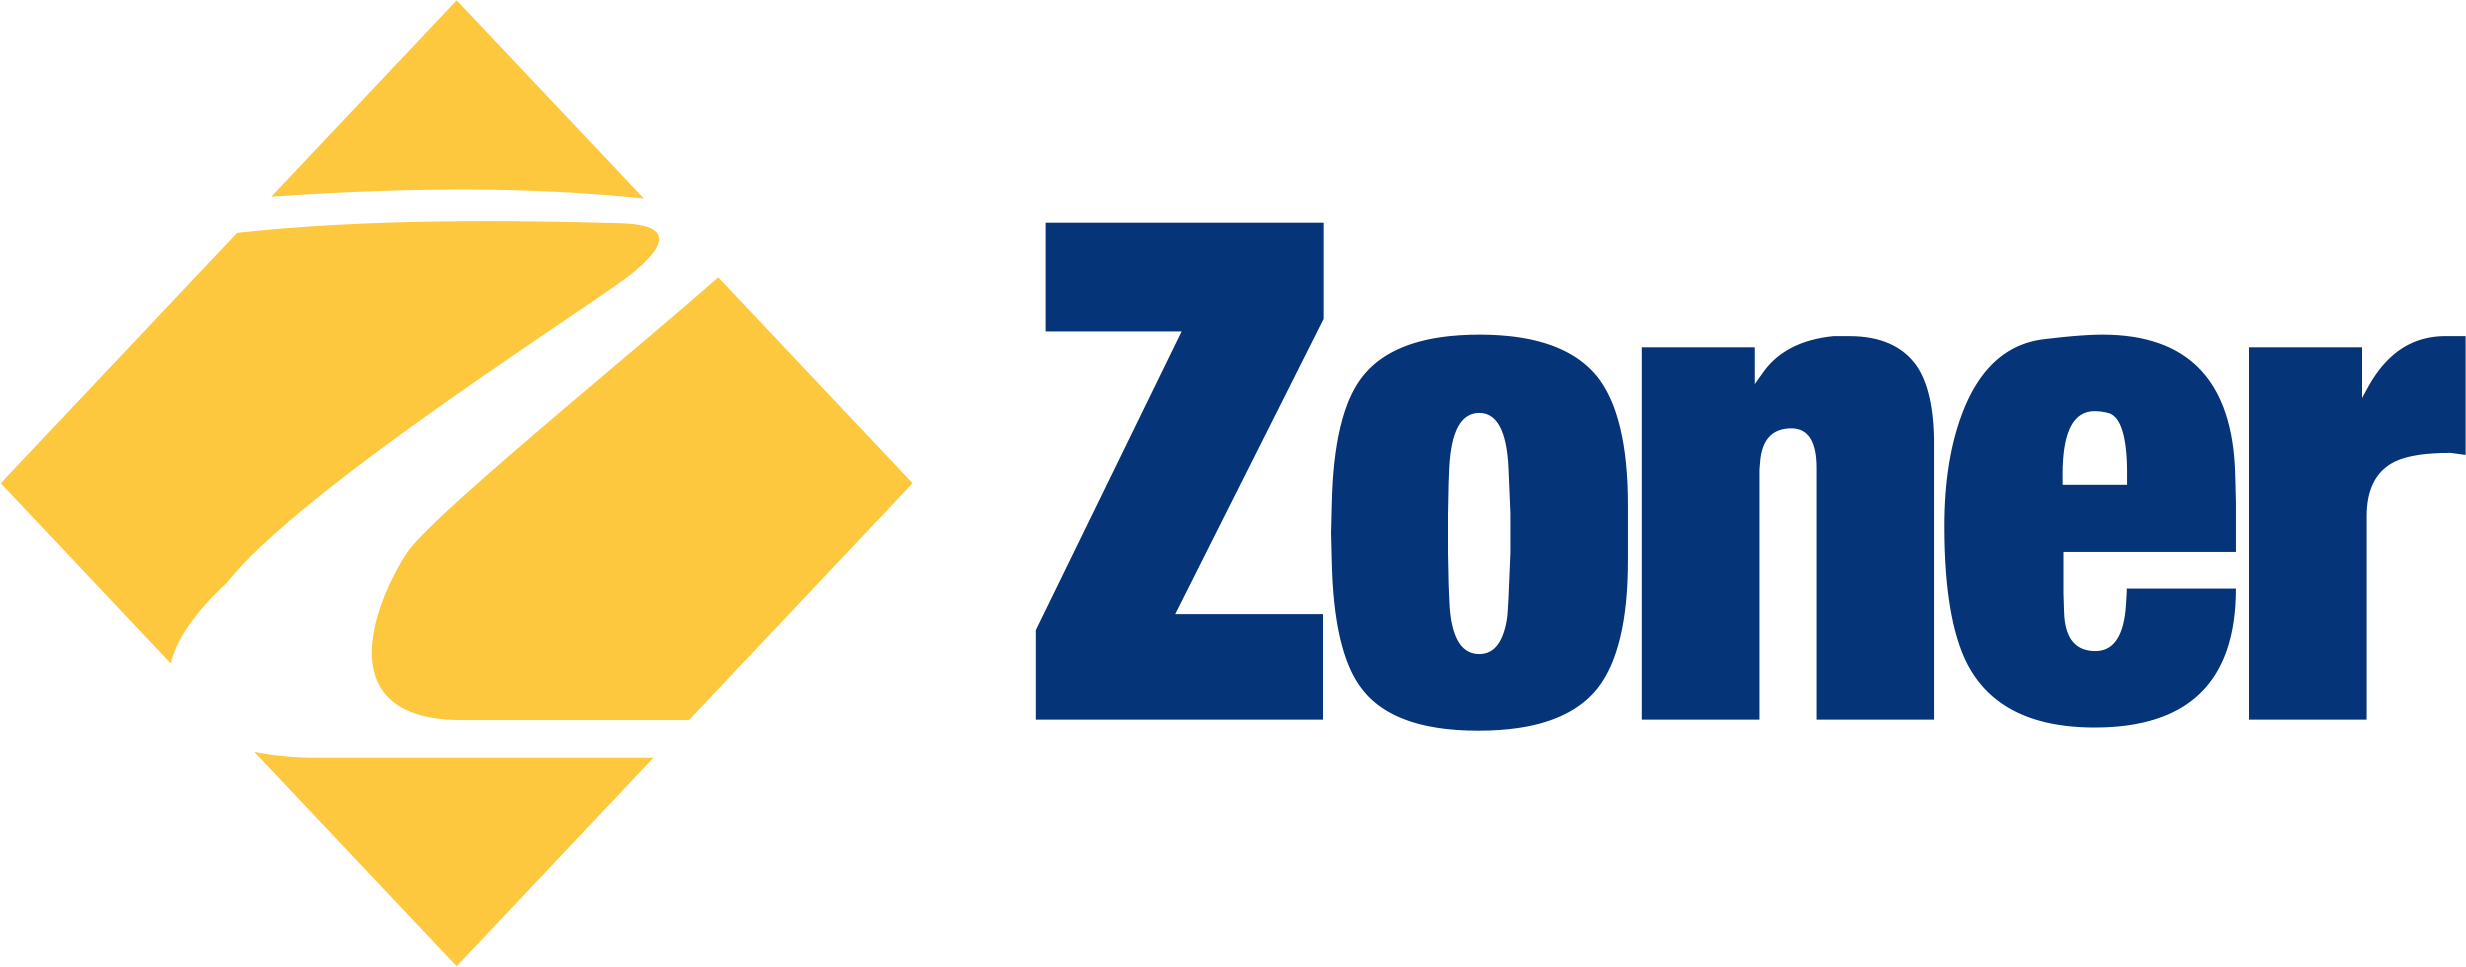 Website von ZONER software, a.s.